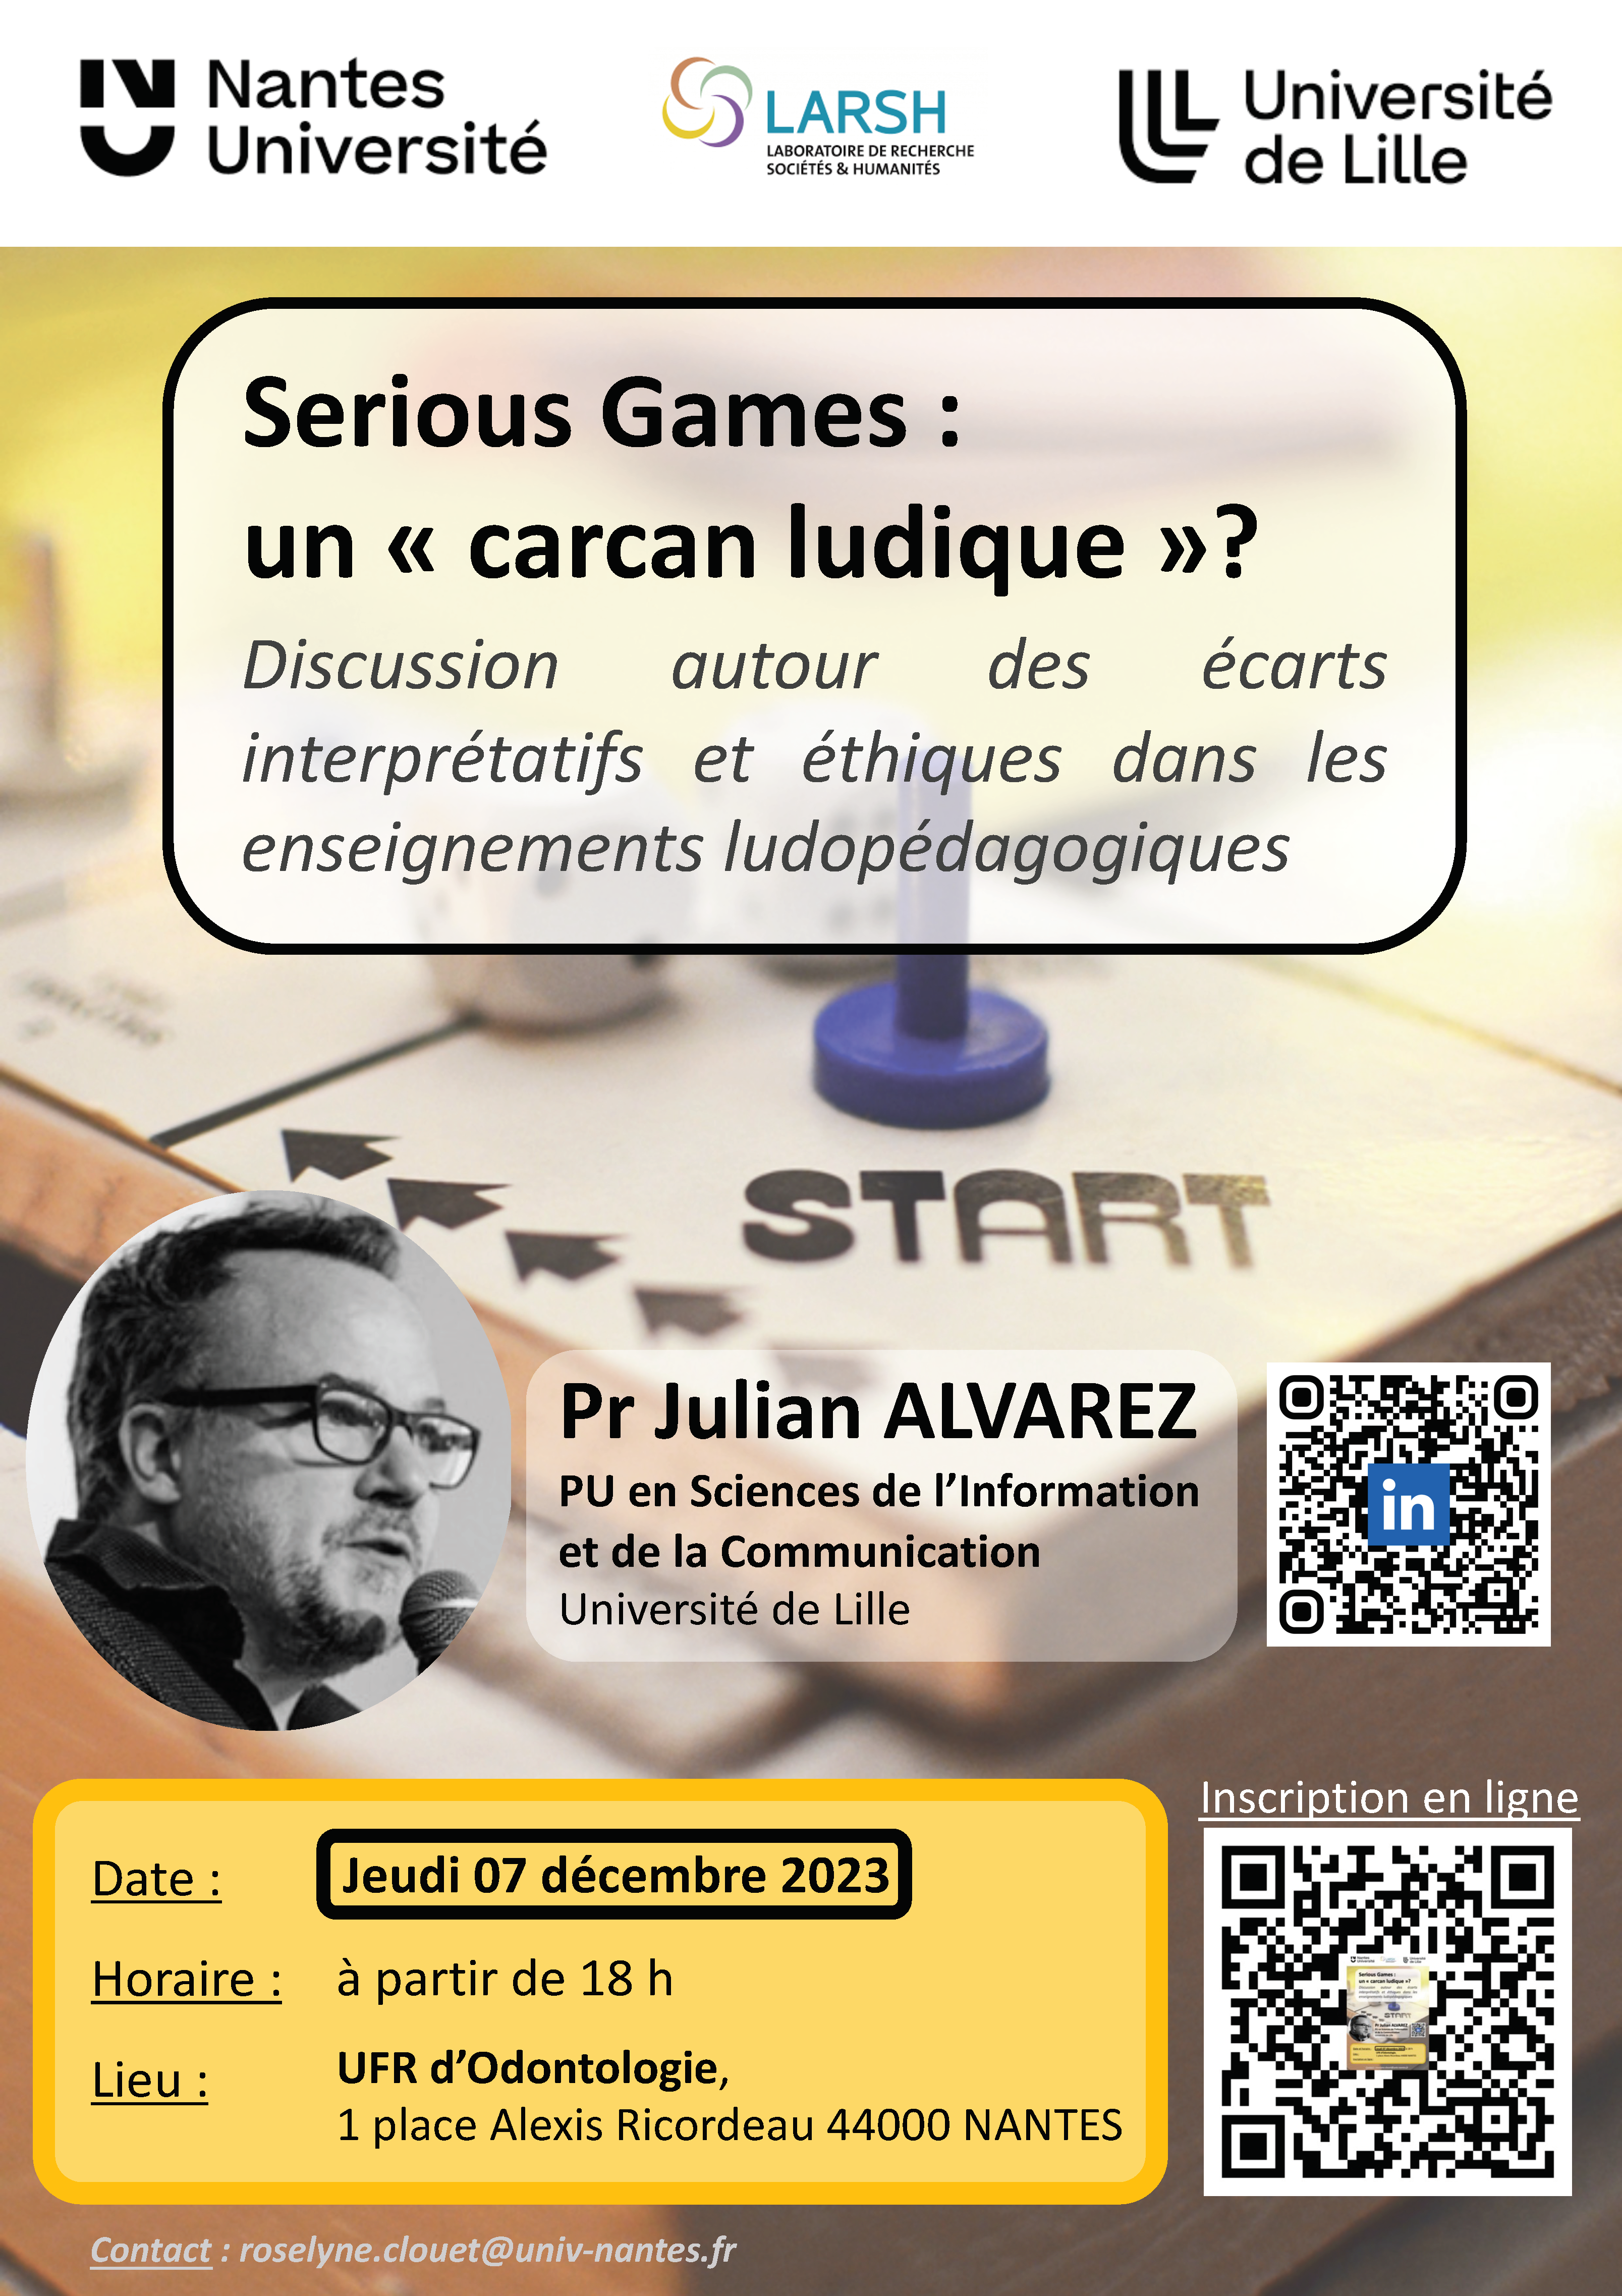 « Serious games : un carcan ludique? » - discussion autour des écarts interprétatifs et éthiques dans les enseignements ludopédagogiques 